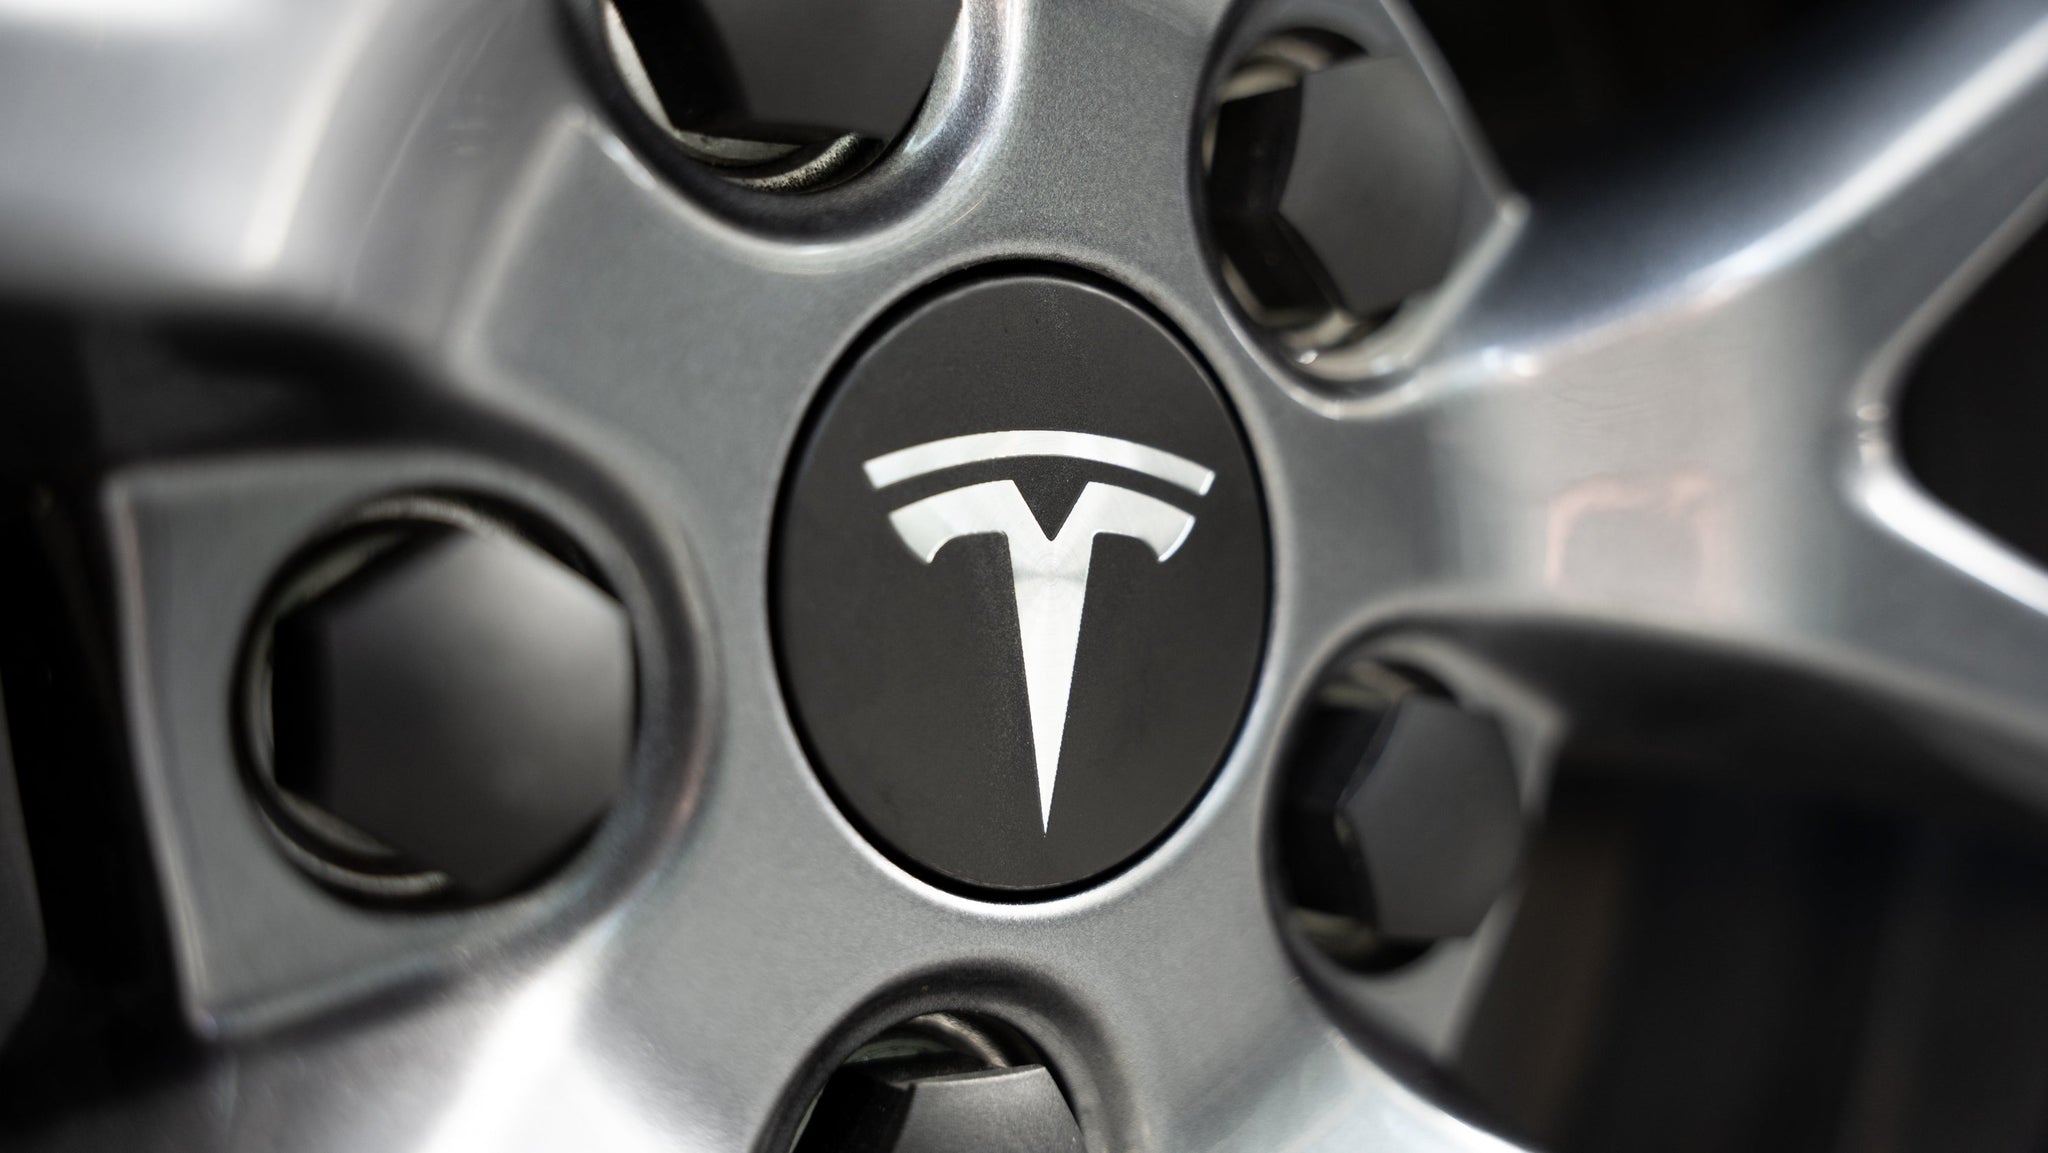 Radnabenabdeckungen mit Logo (4x) für alle Tesla Modelle